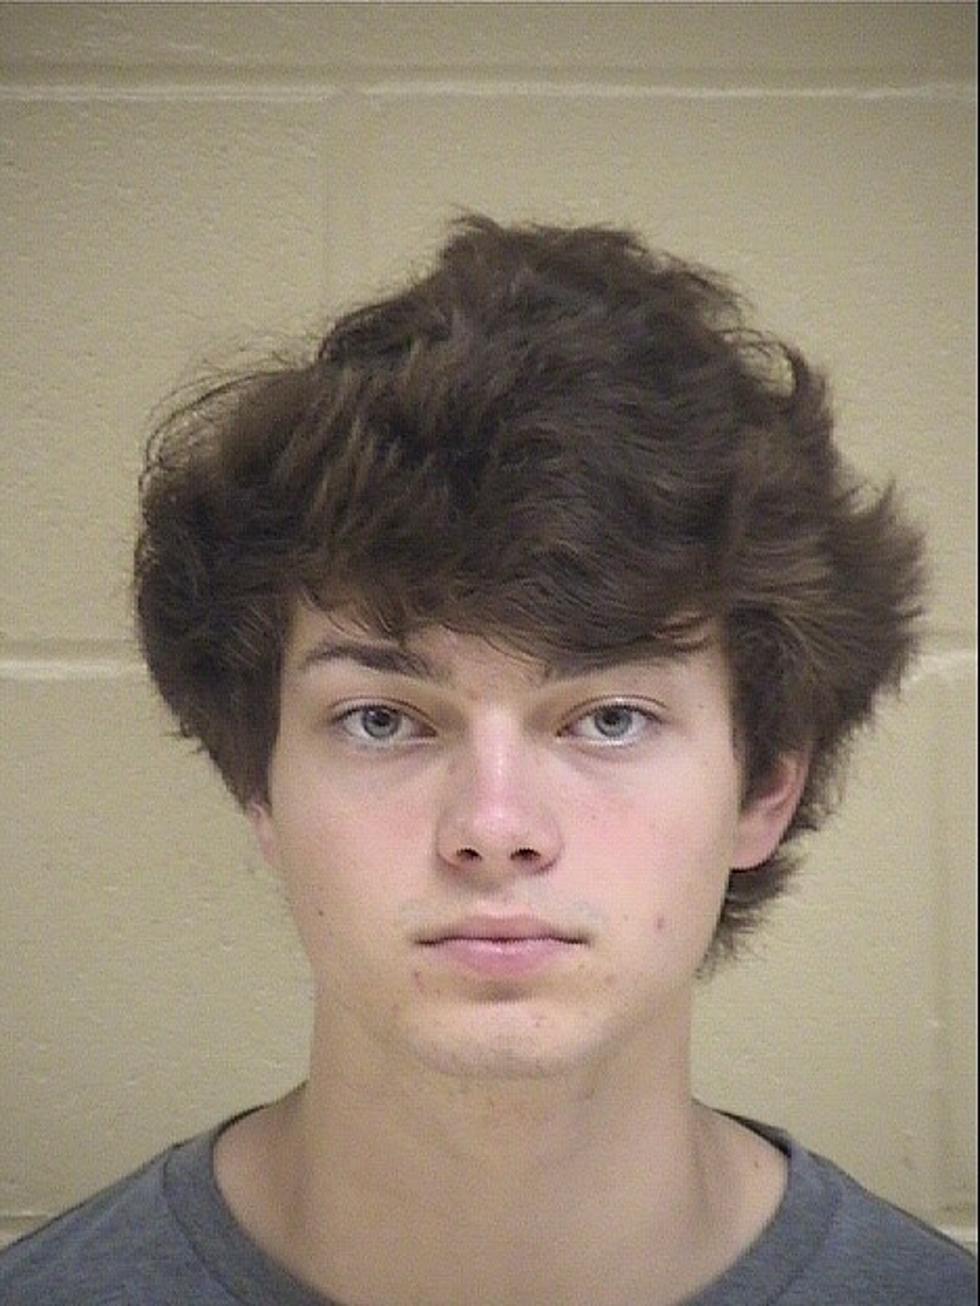 Shreveport Teen’s Social Media Stunt Ends in Arrest